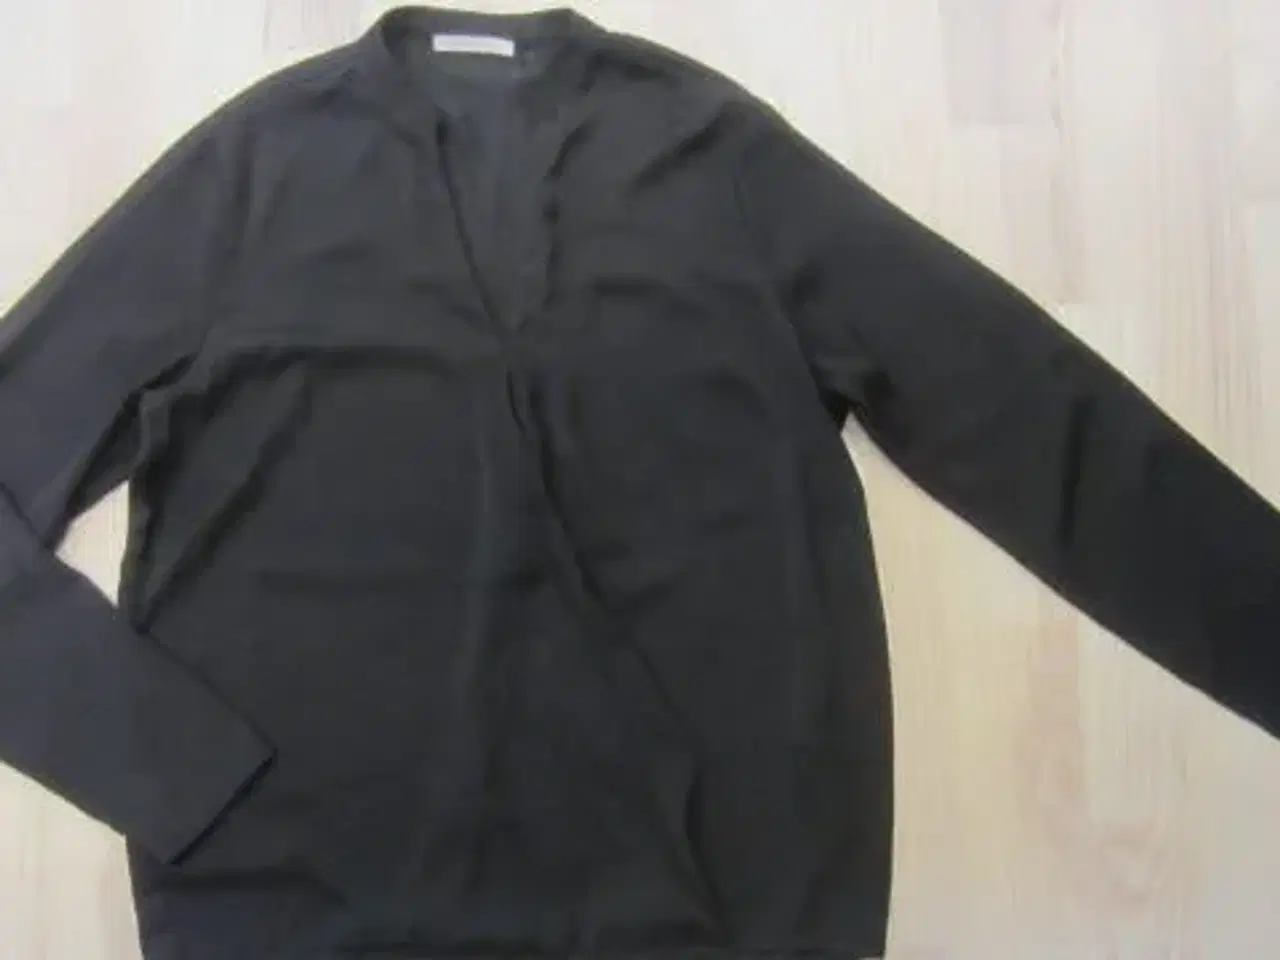 Billede 1 - Str. S, sort bluse/skjorte